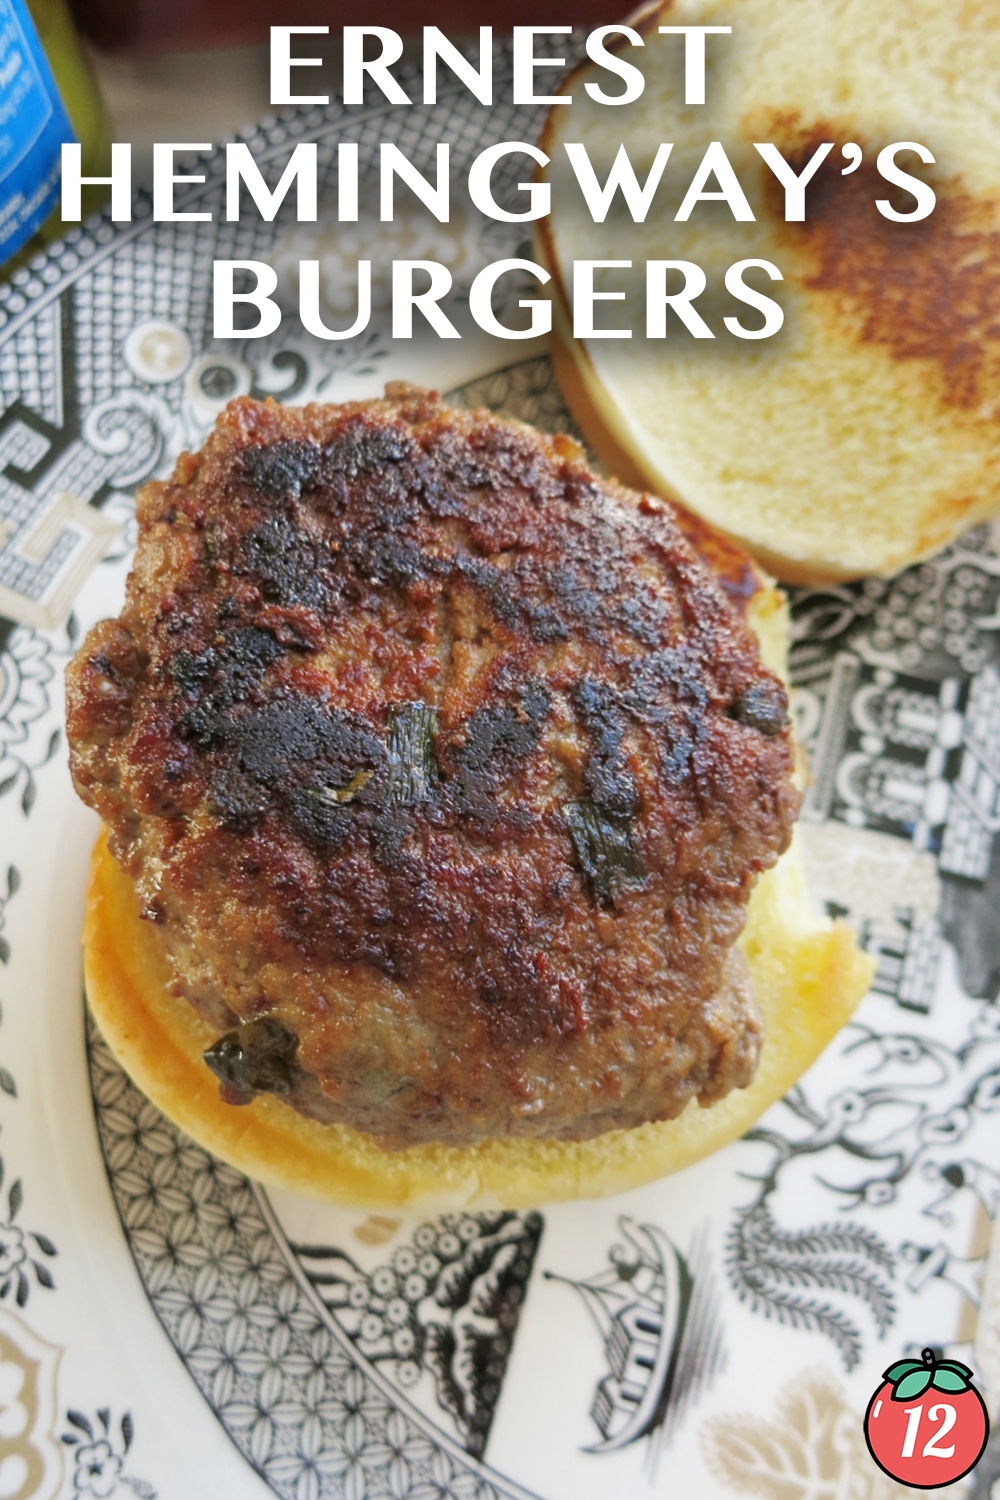 The Hemingway Burger, Recipes